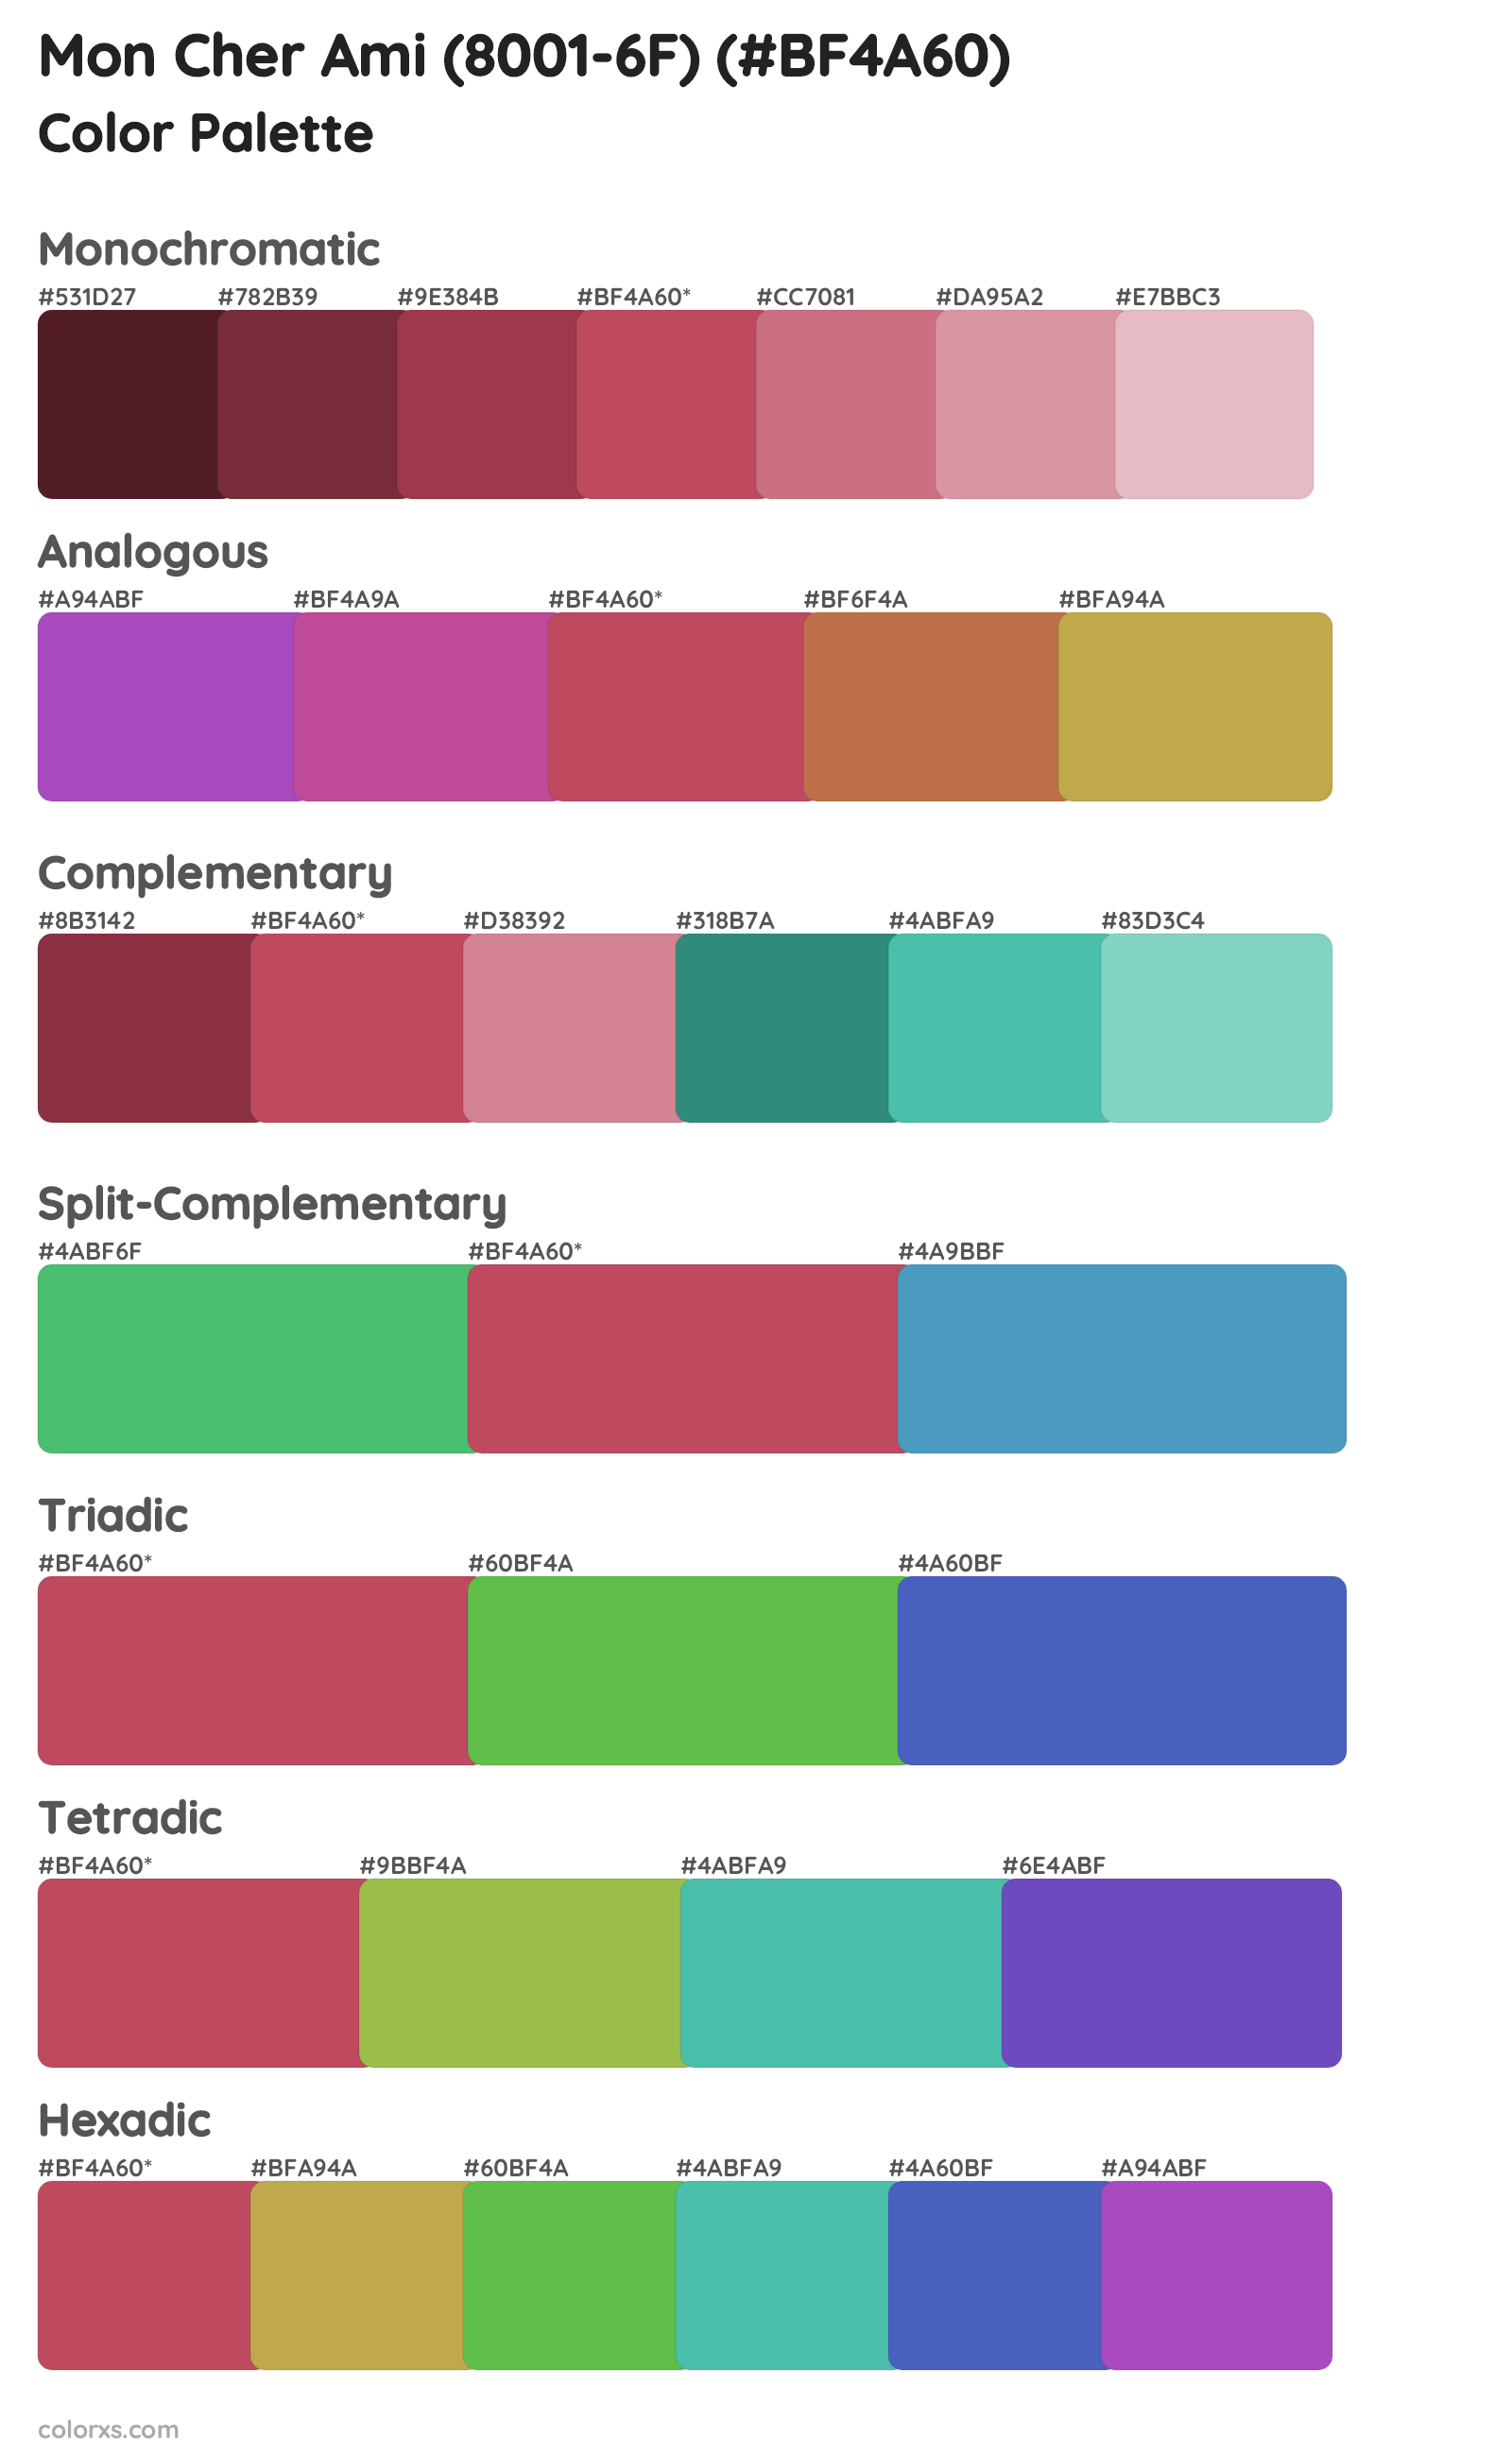 Mon Cher Ami (8001-6F) Color Scheme Palettes